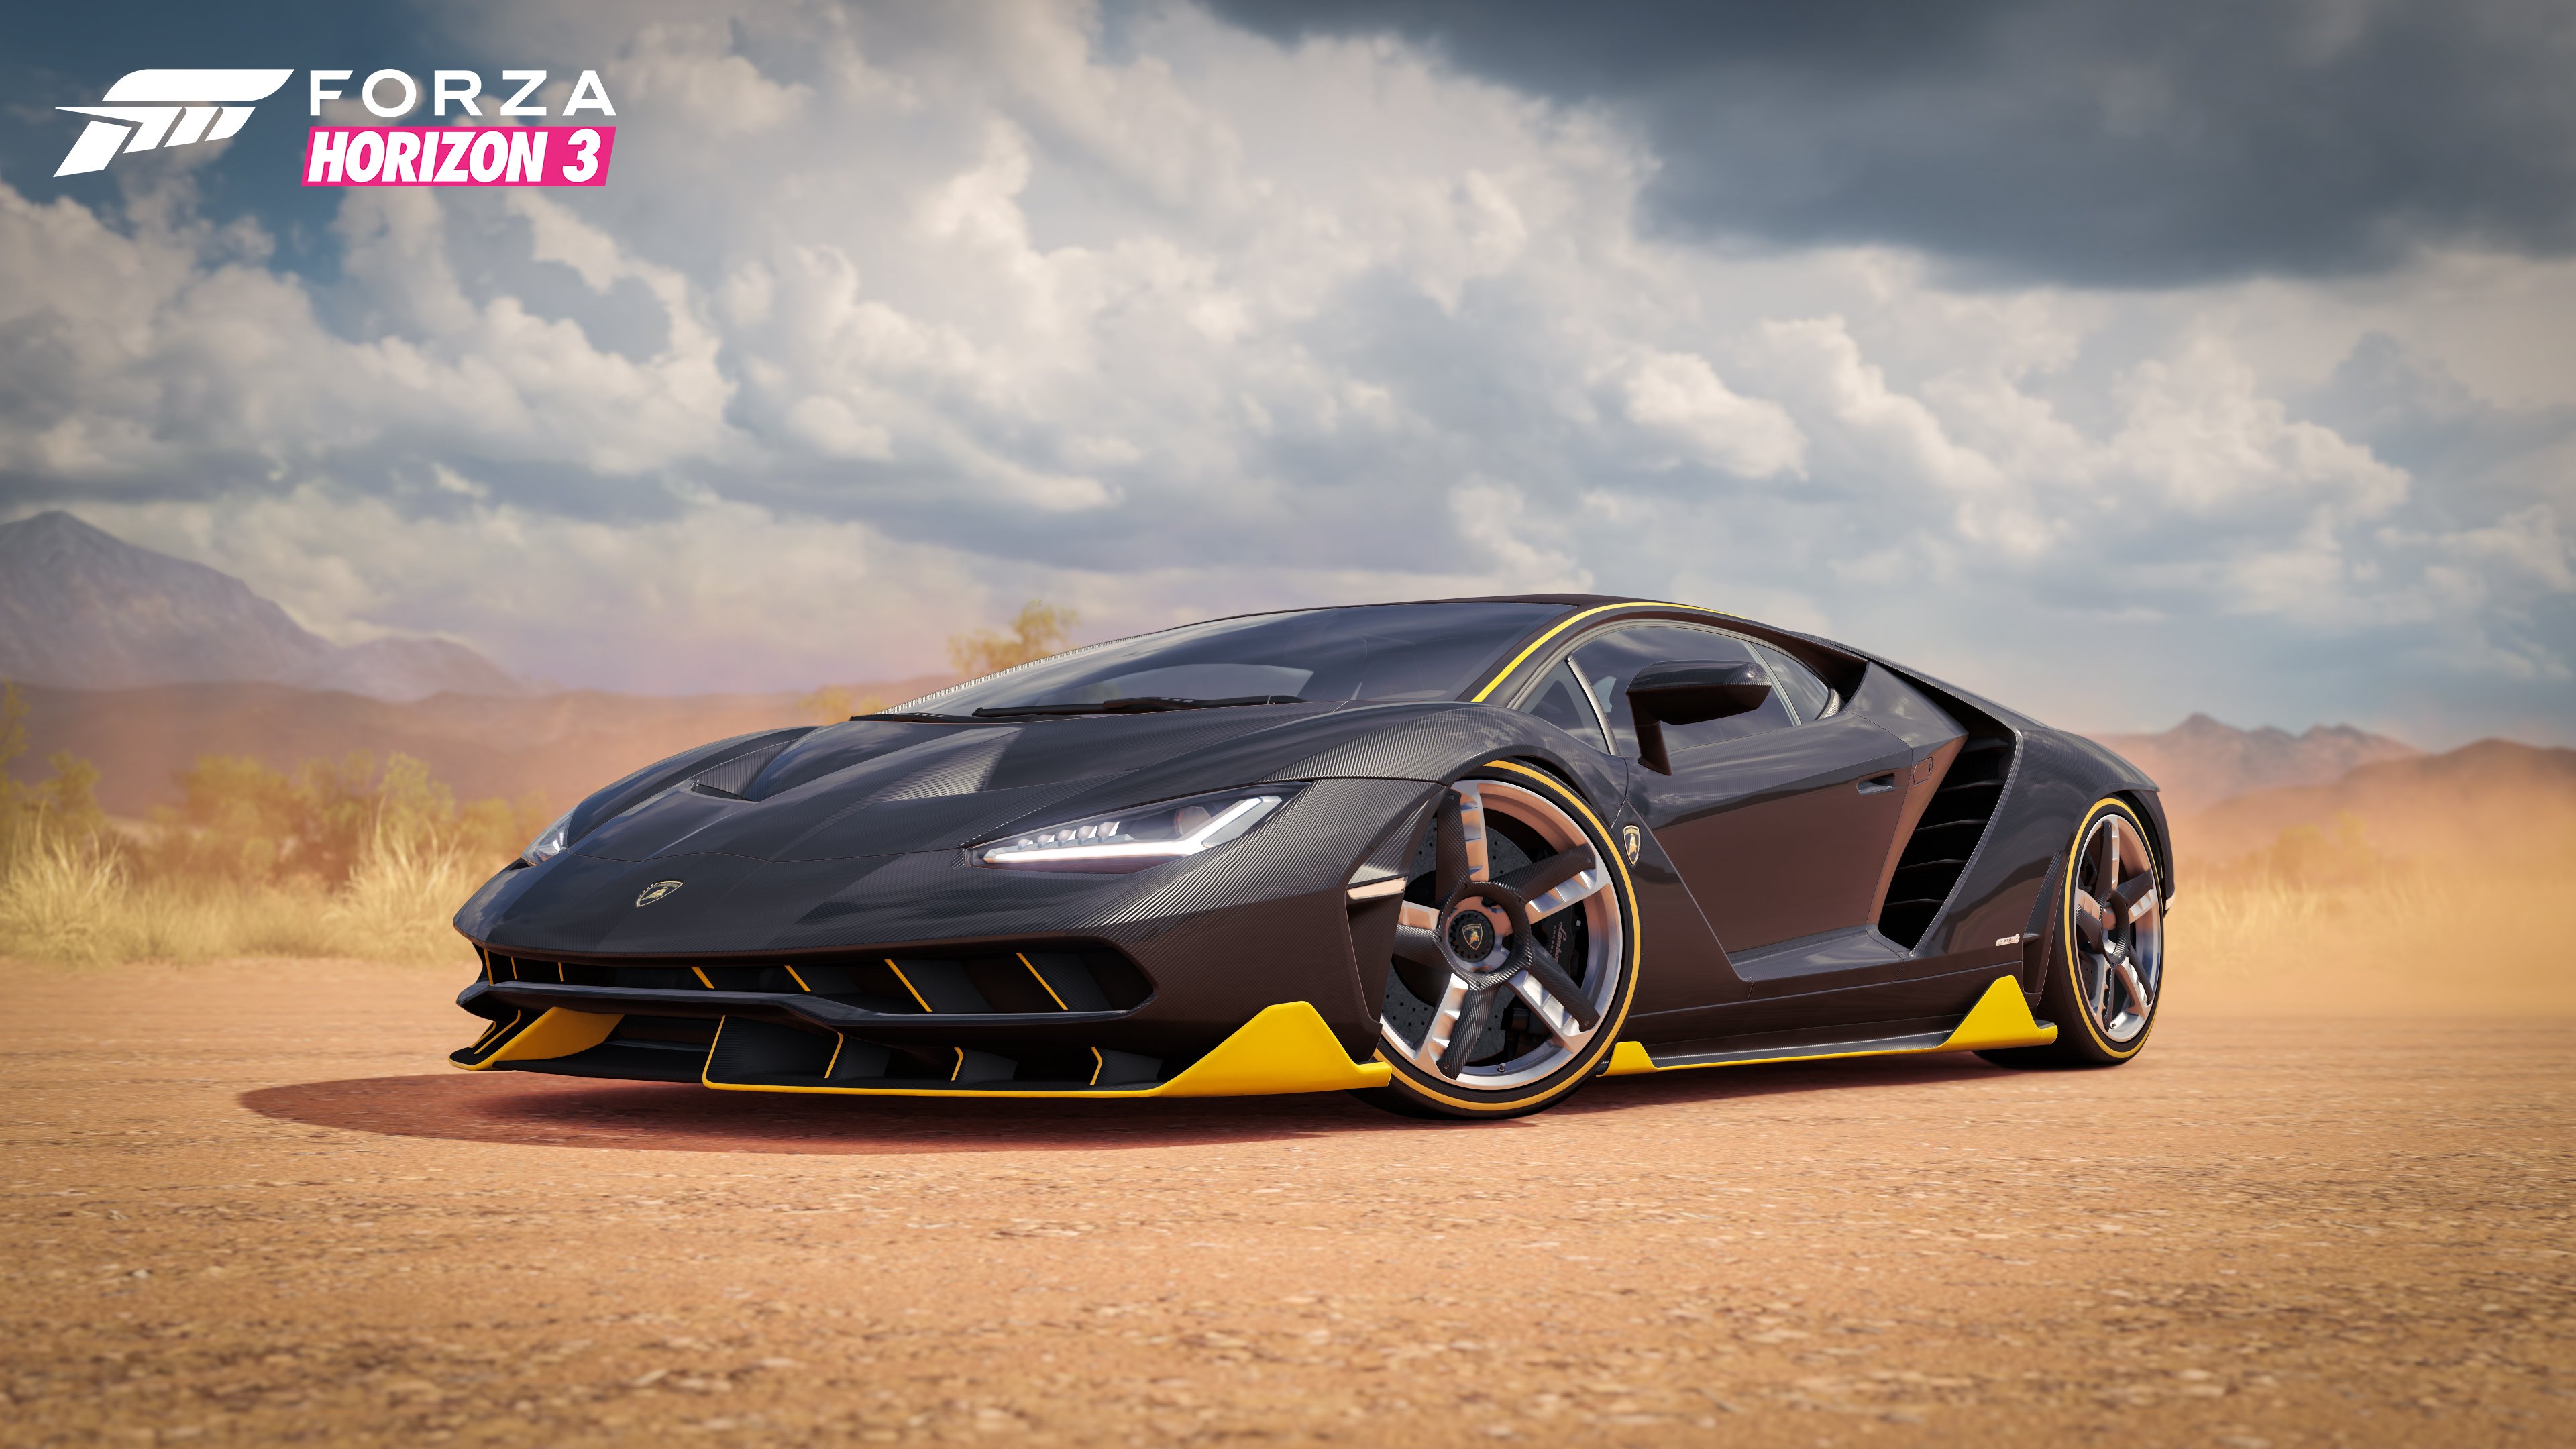 Mobile wallpaper: Car, Video Game, Forza Horizon 3, Forza, 453387